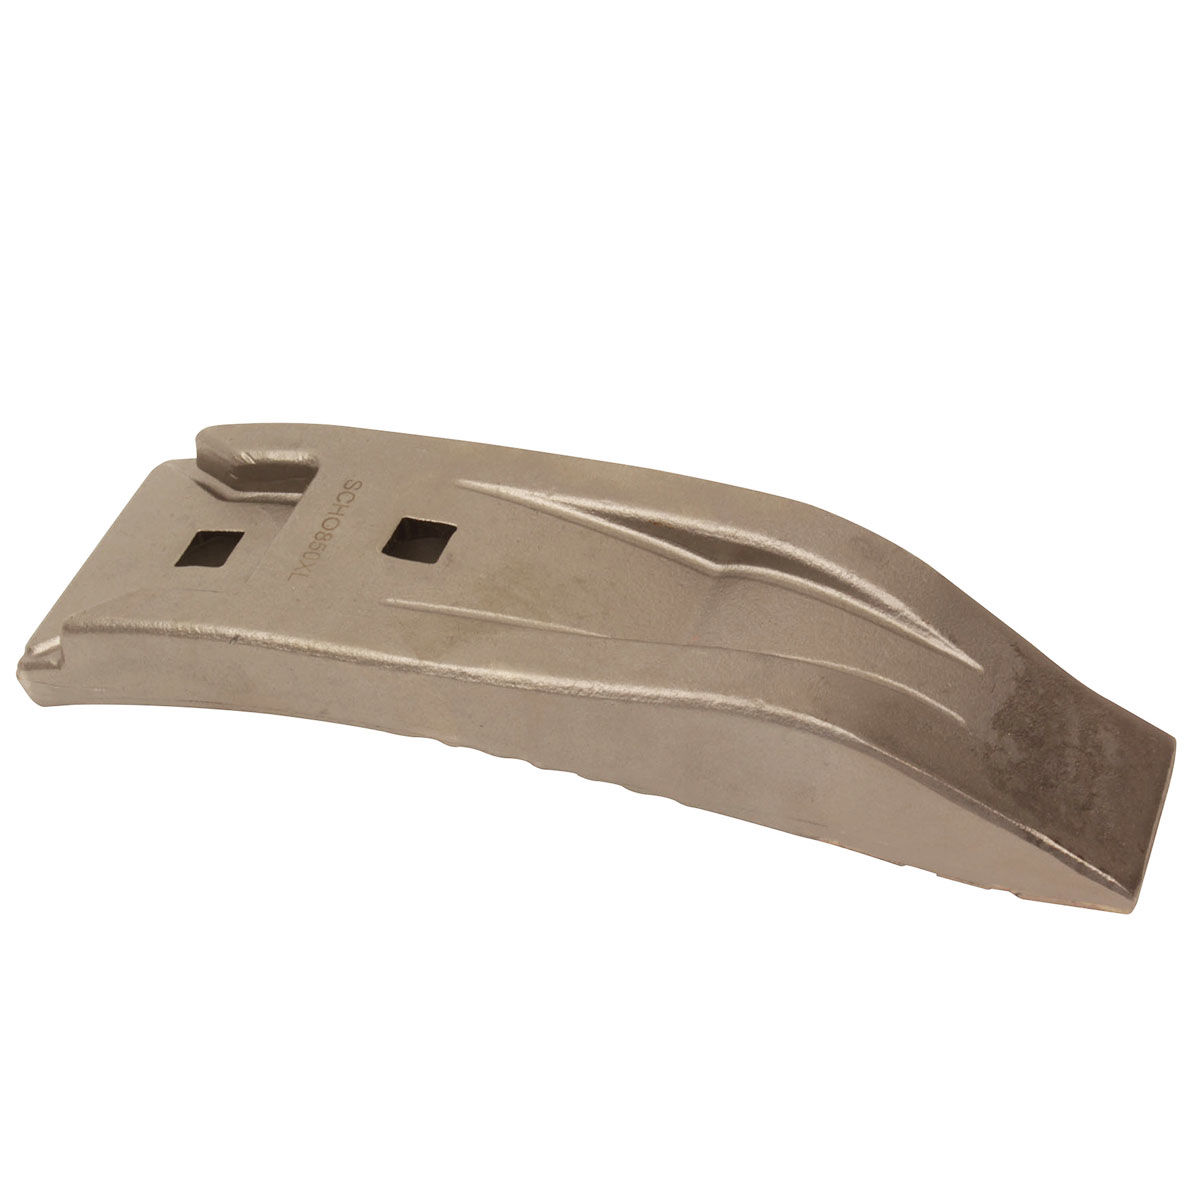 00311069 - 34060850:Horsch Tip with carbide insert